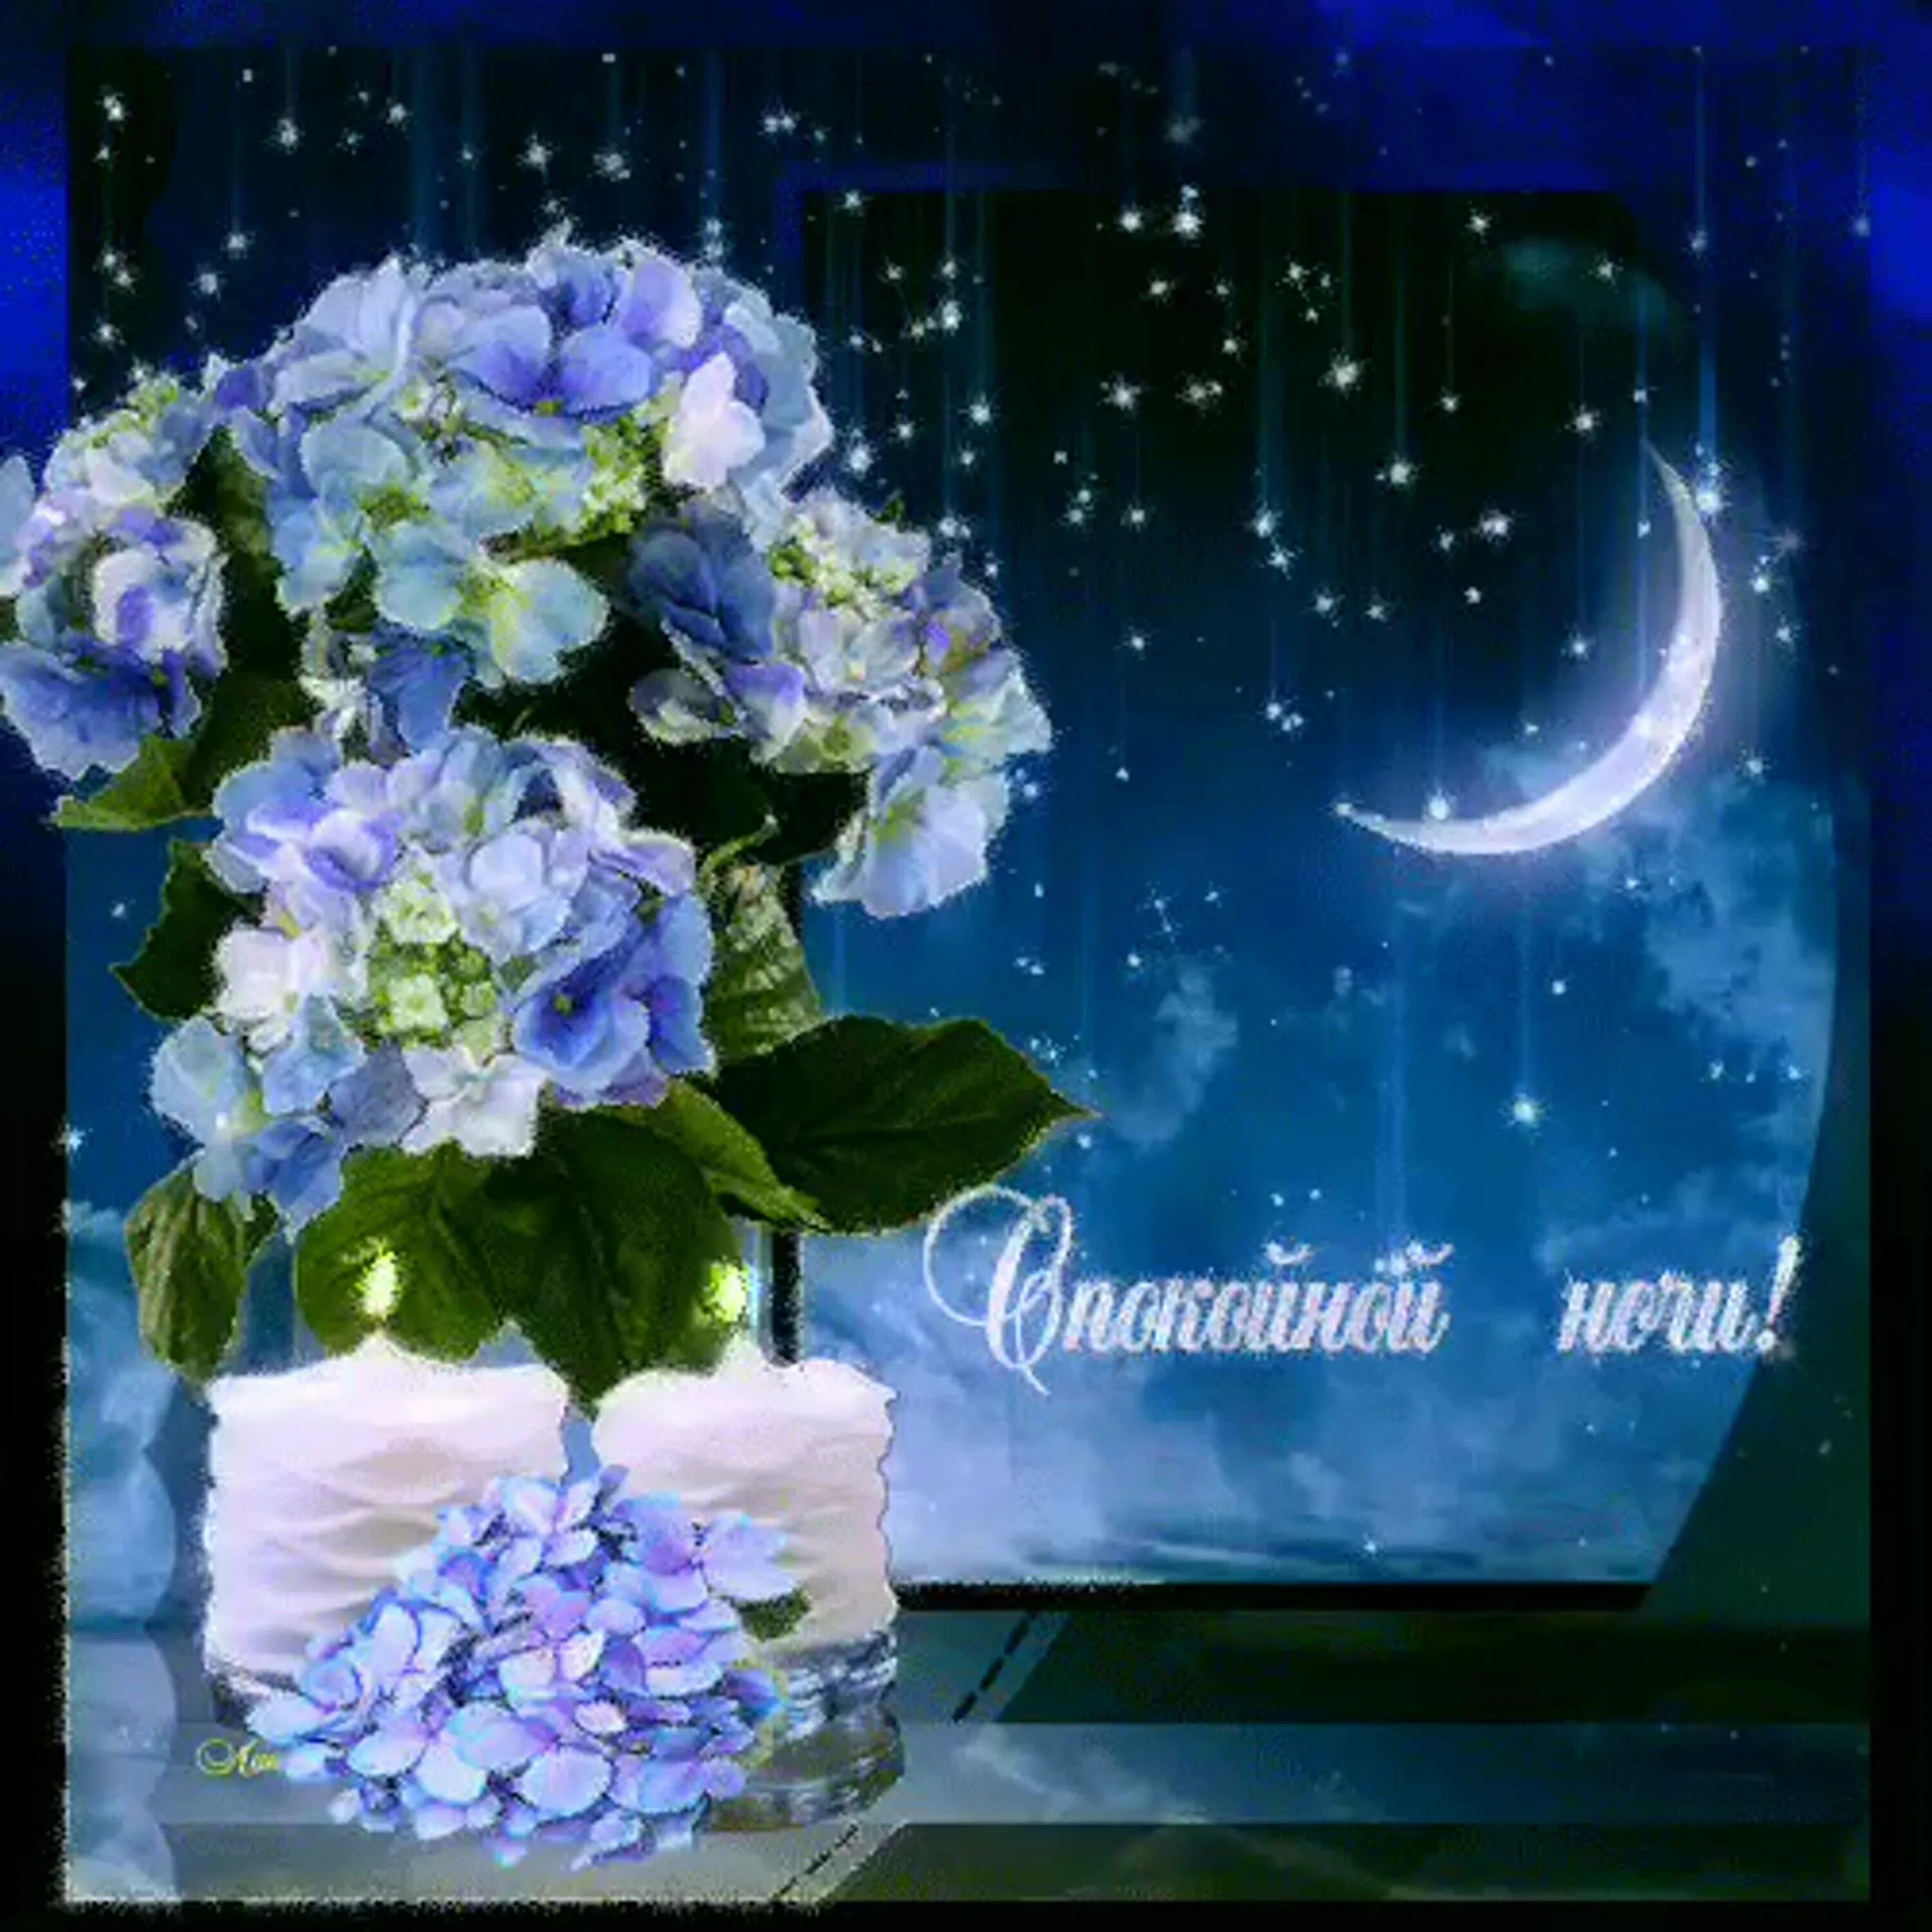 Доброй апрельской ночи картинки красивые. Открытки доброй ночи. Прекрасная ночь. Чудесной ночи. Открытки спокойной ночи с цветами.